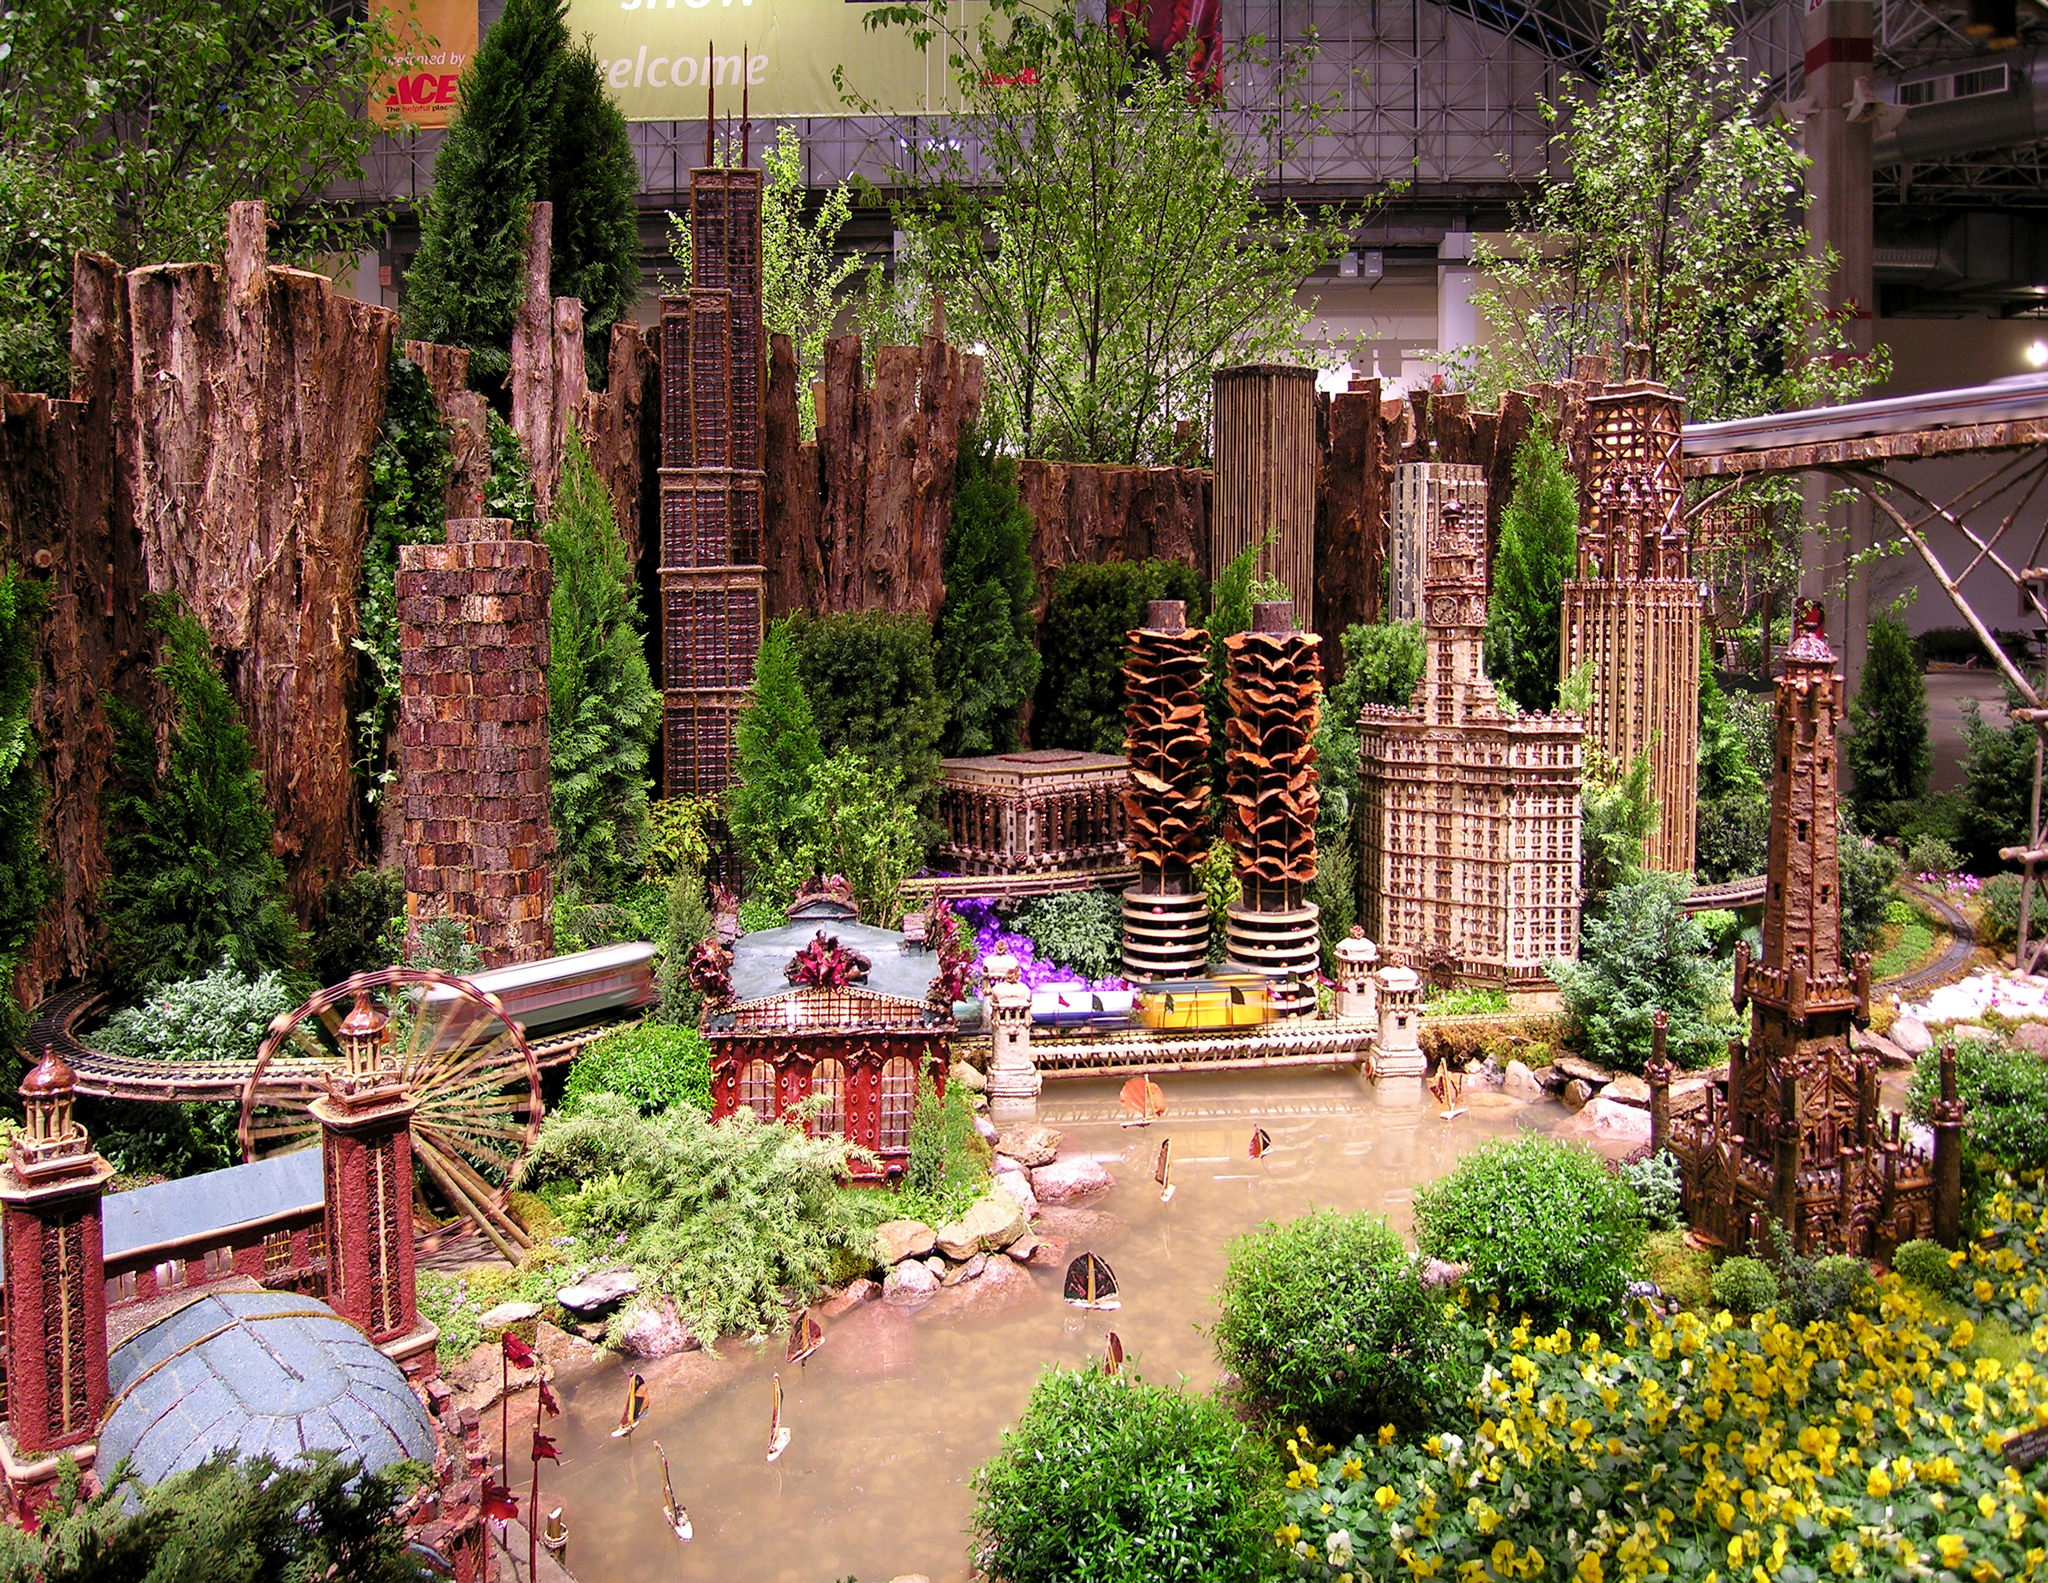 Chicago Flower Garden Show Applied Imagination Ltd